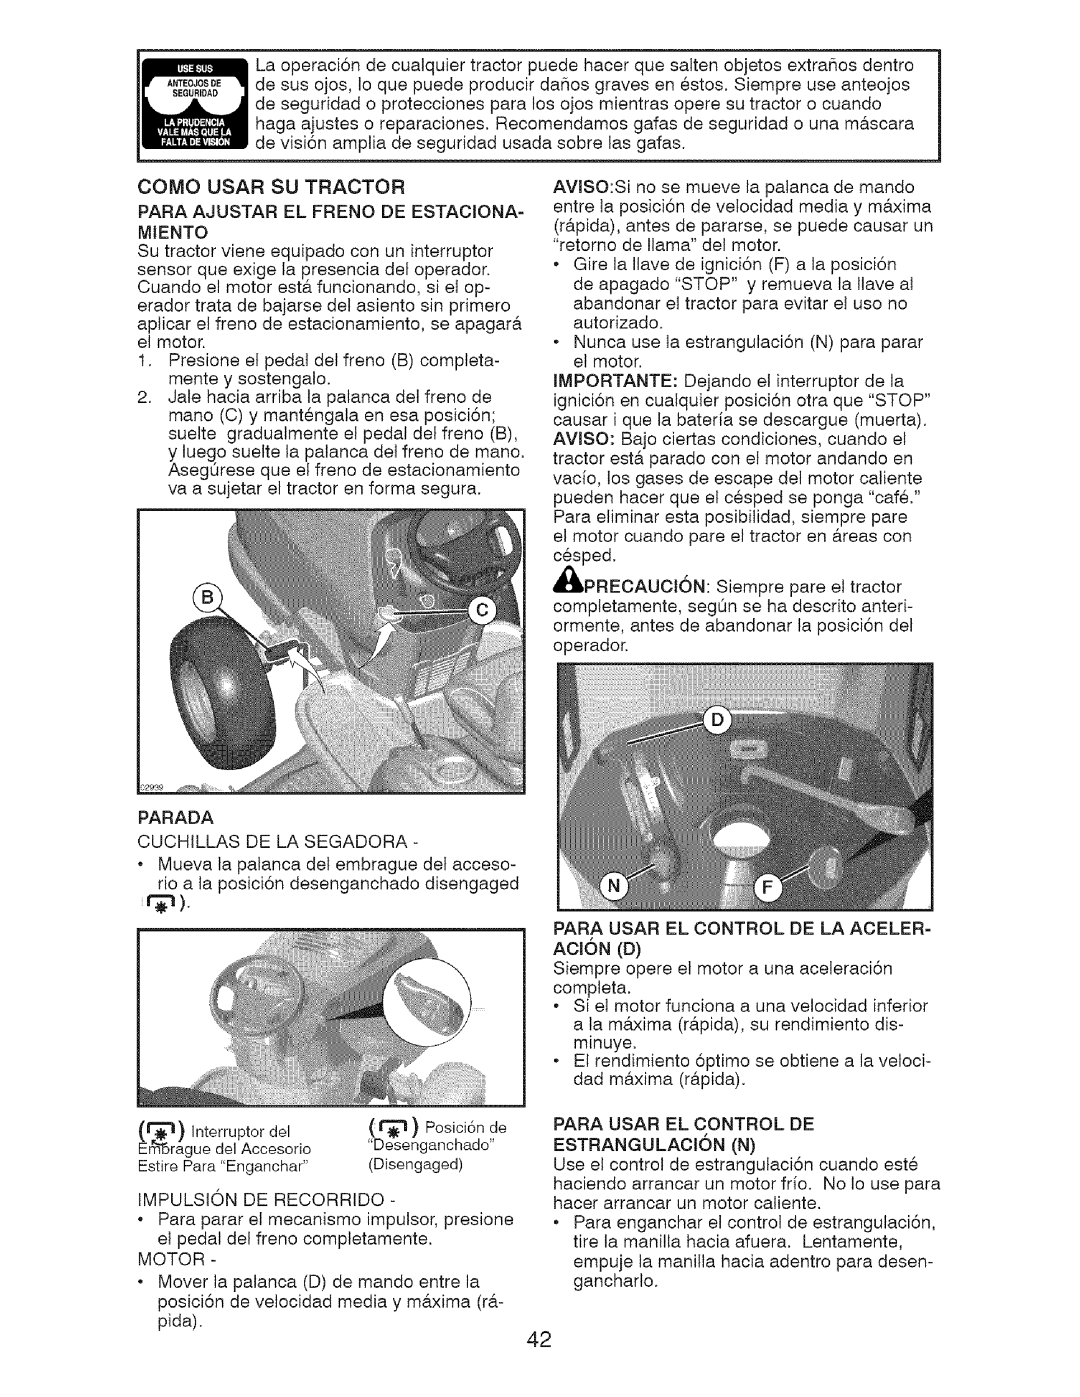 Craftsman 917.28726 owner manual Como Usar Su Tractor 